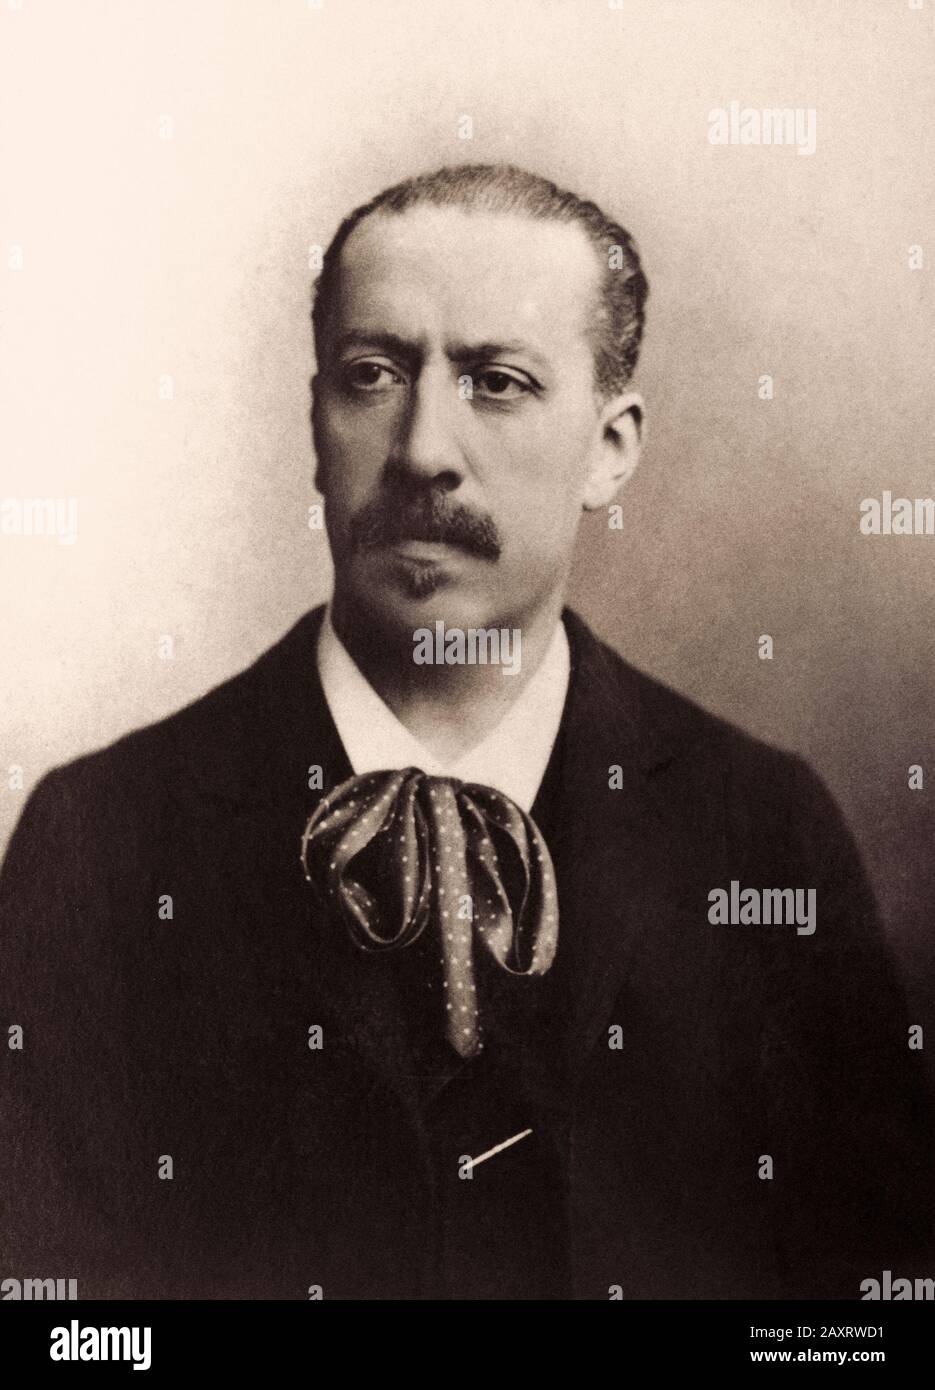 Charles-Marie Widor (1844 – 1937) è stato un organista, compositore e insegnante francese, particolarmente degno di nota per le sue dieci sinfonie d'organo. Foto Stock